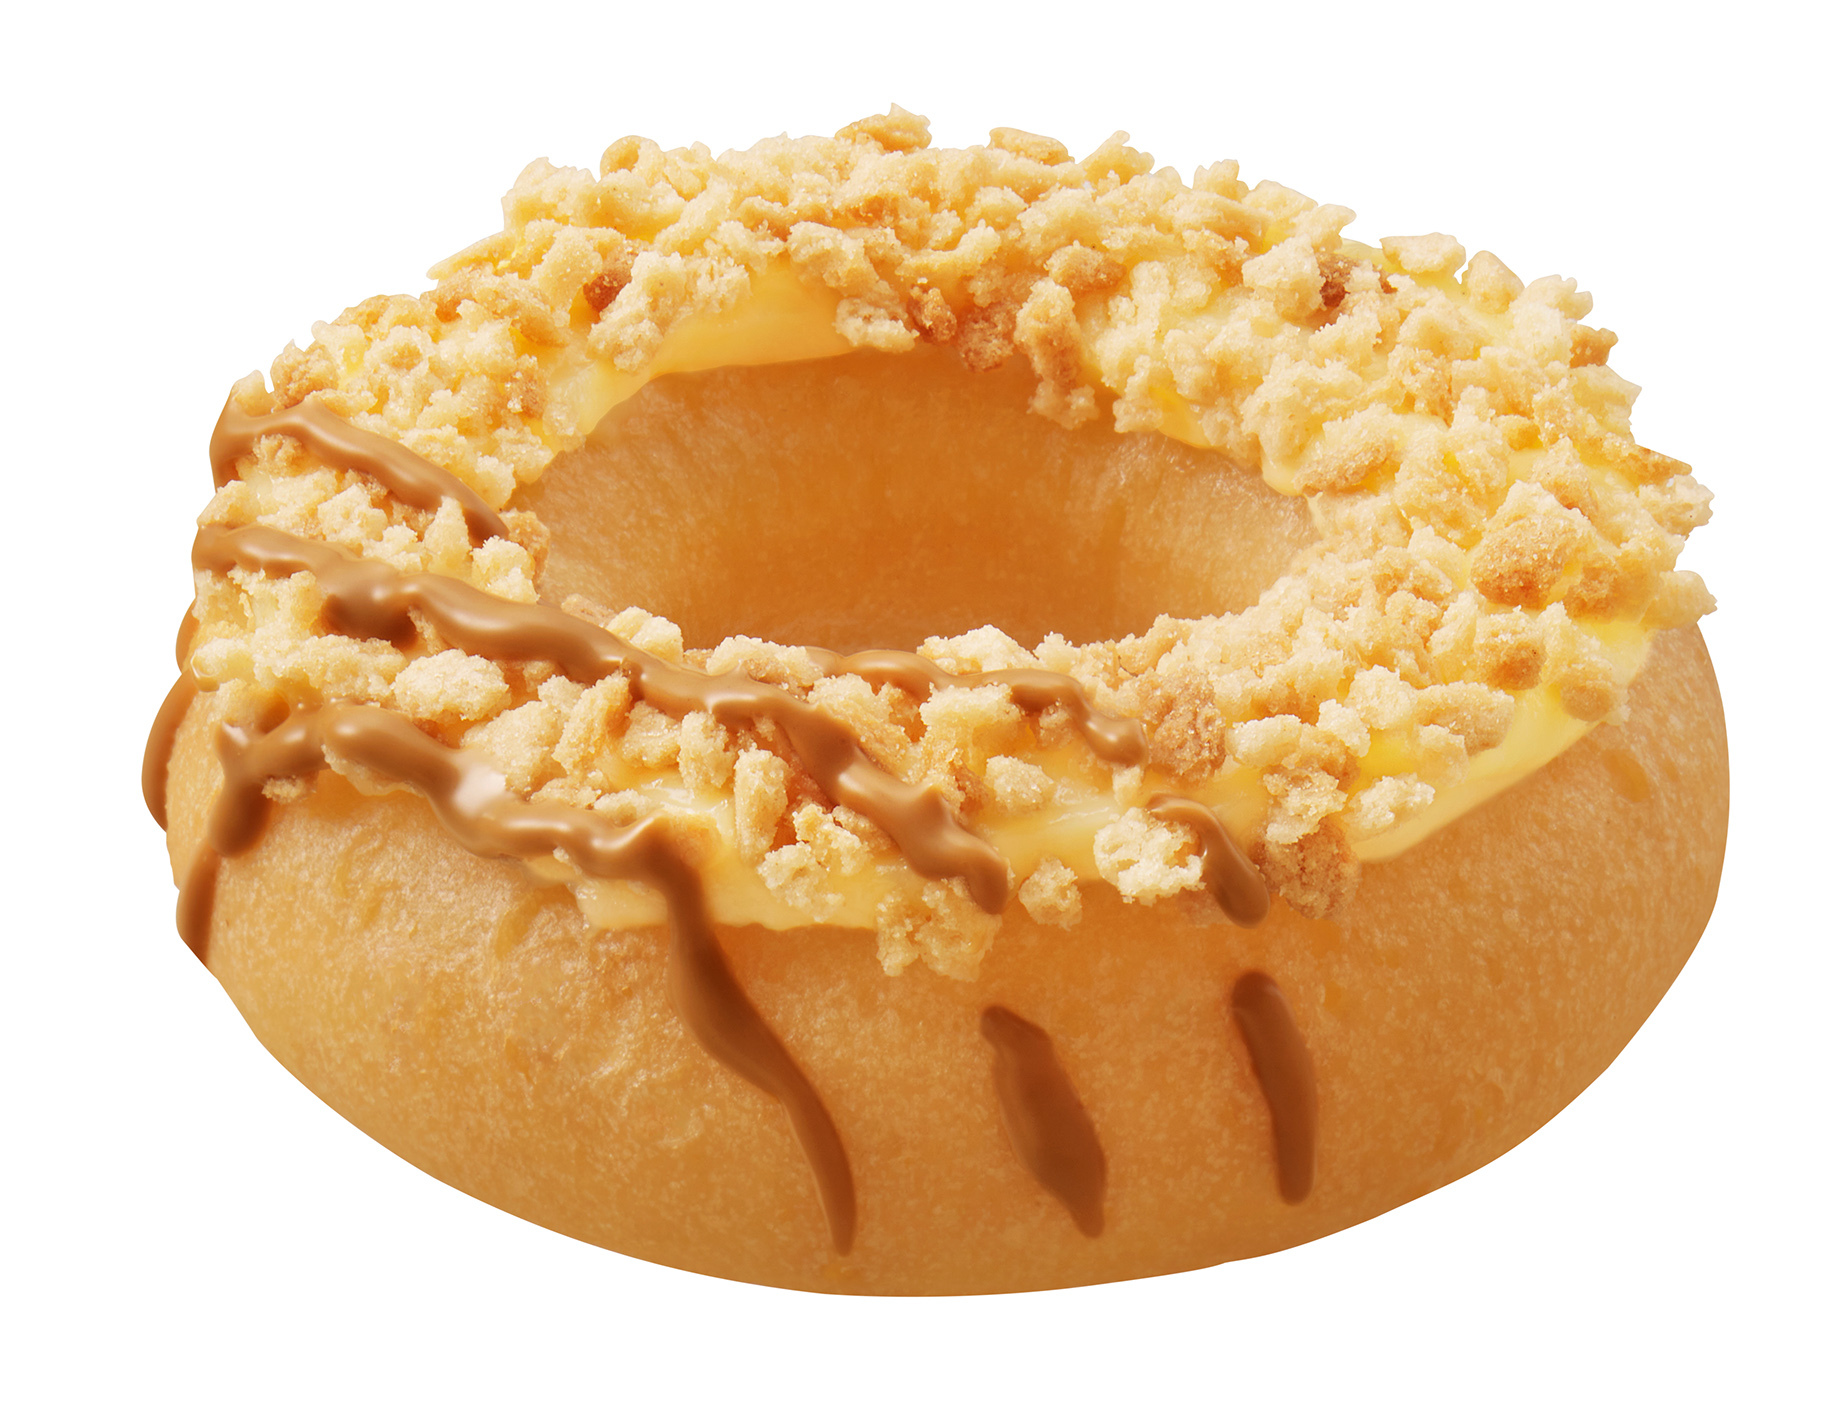 「クリスピー・クリーム・ドーナツ」もちふわ食感がたまらん♡初の国産米粉入りドーナツ『Hello! Komeco』が新登場